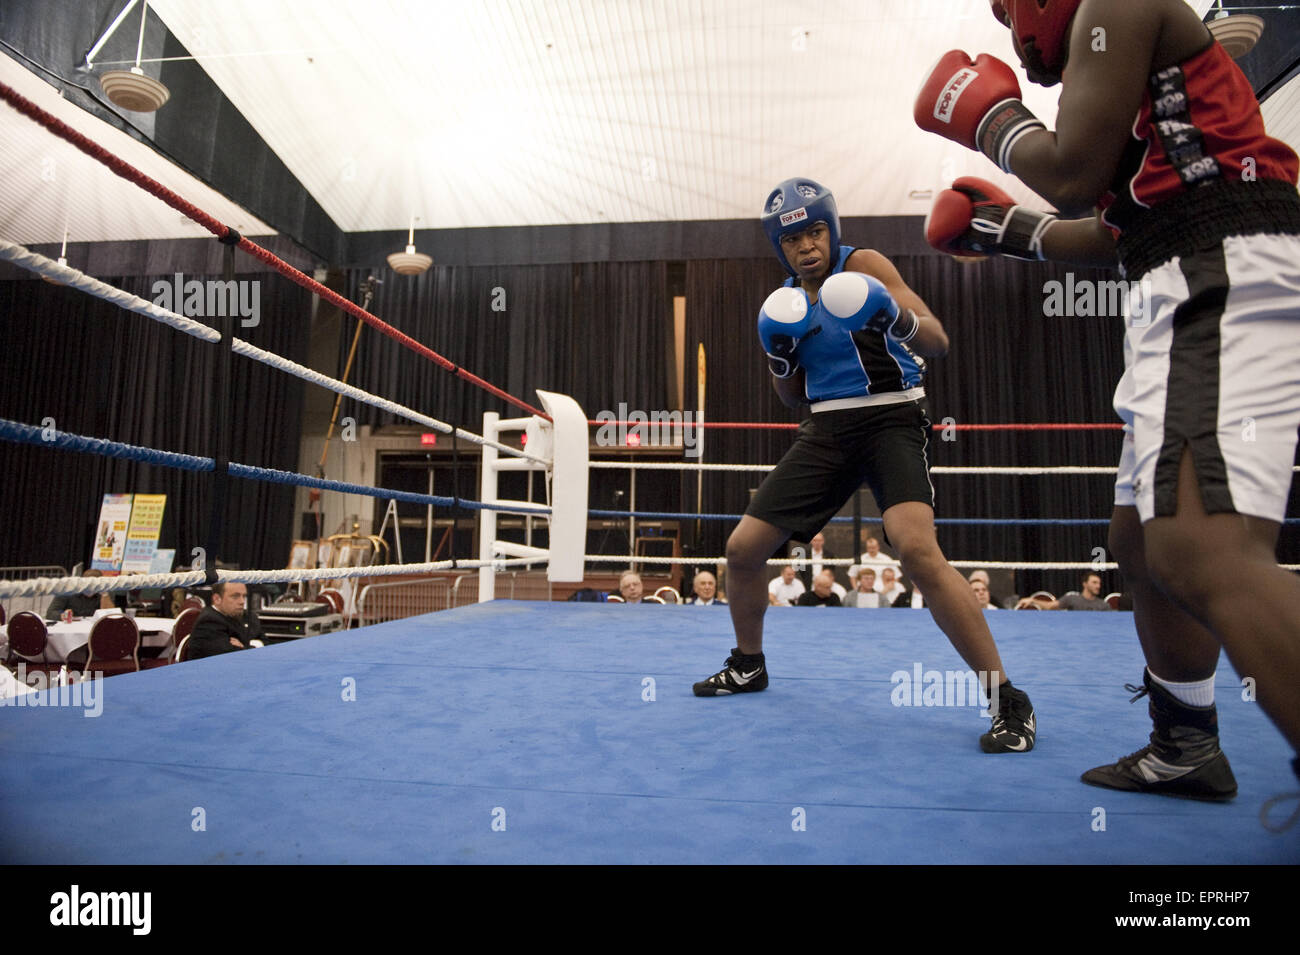 Boxer regarde son adversaire au cours d'une demi-finale au championnat canadien de boxe amateur dans la région de Saint-Hyacinthe, Québec. Banque D'Images